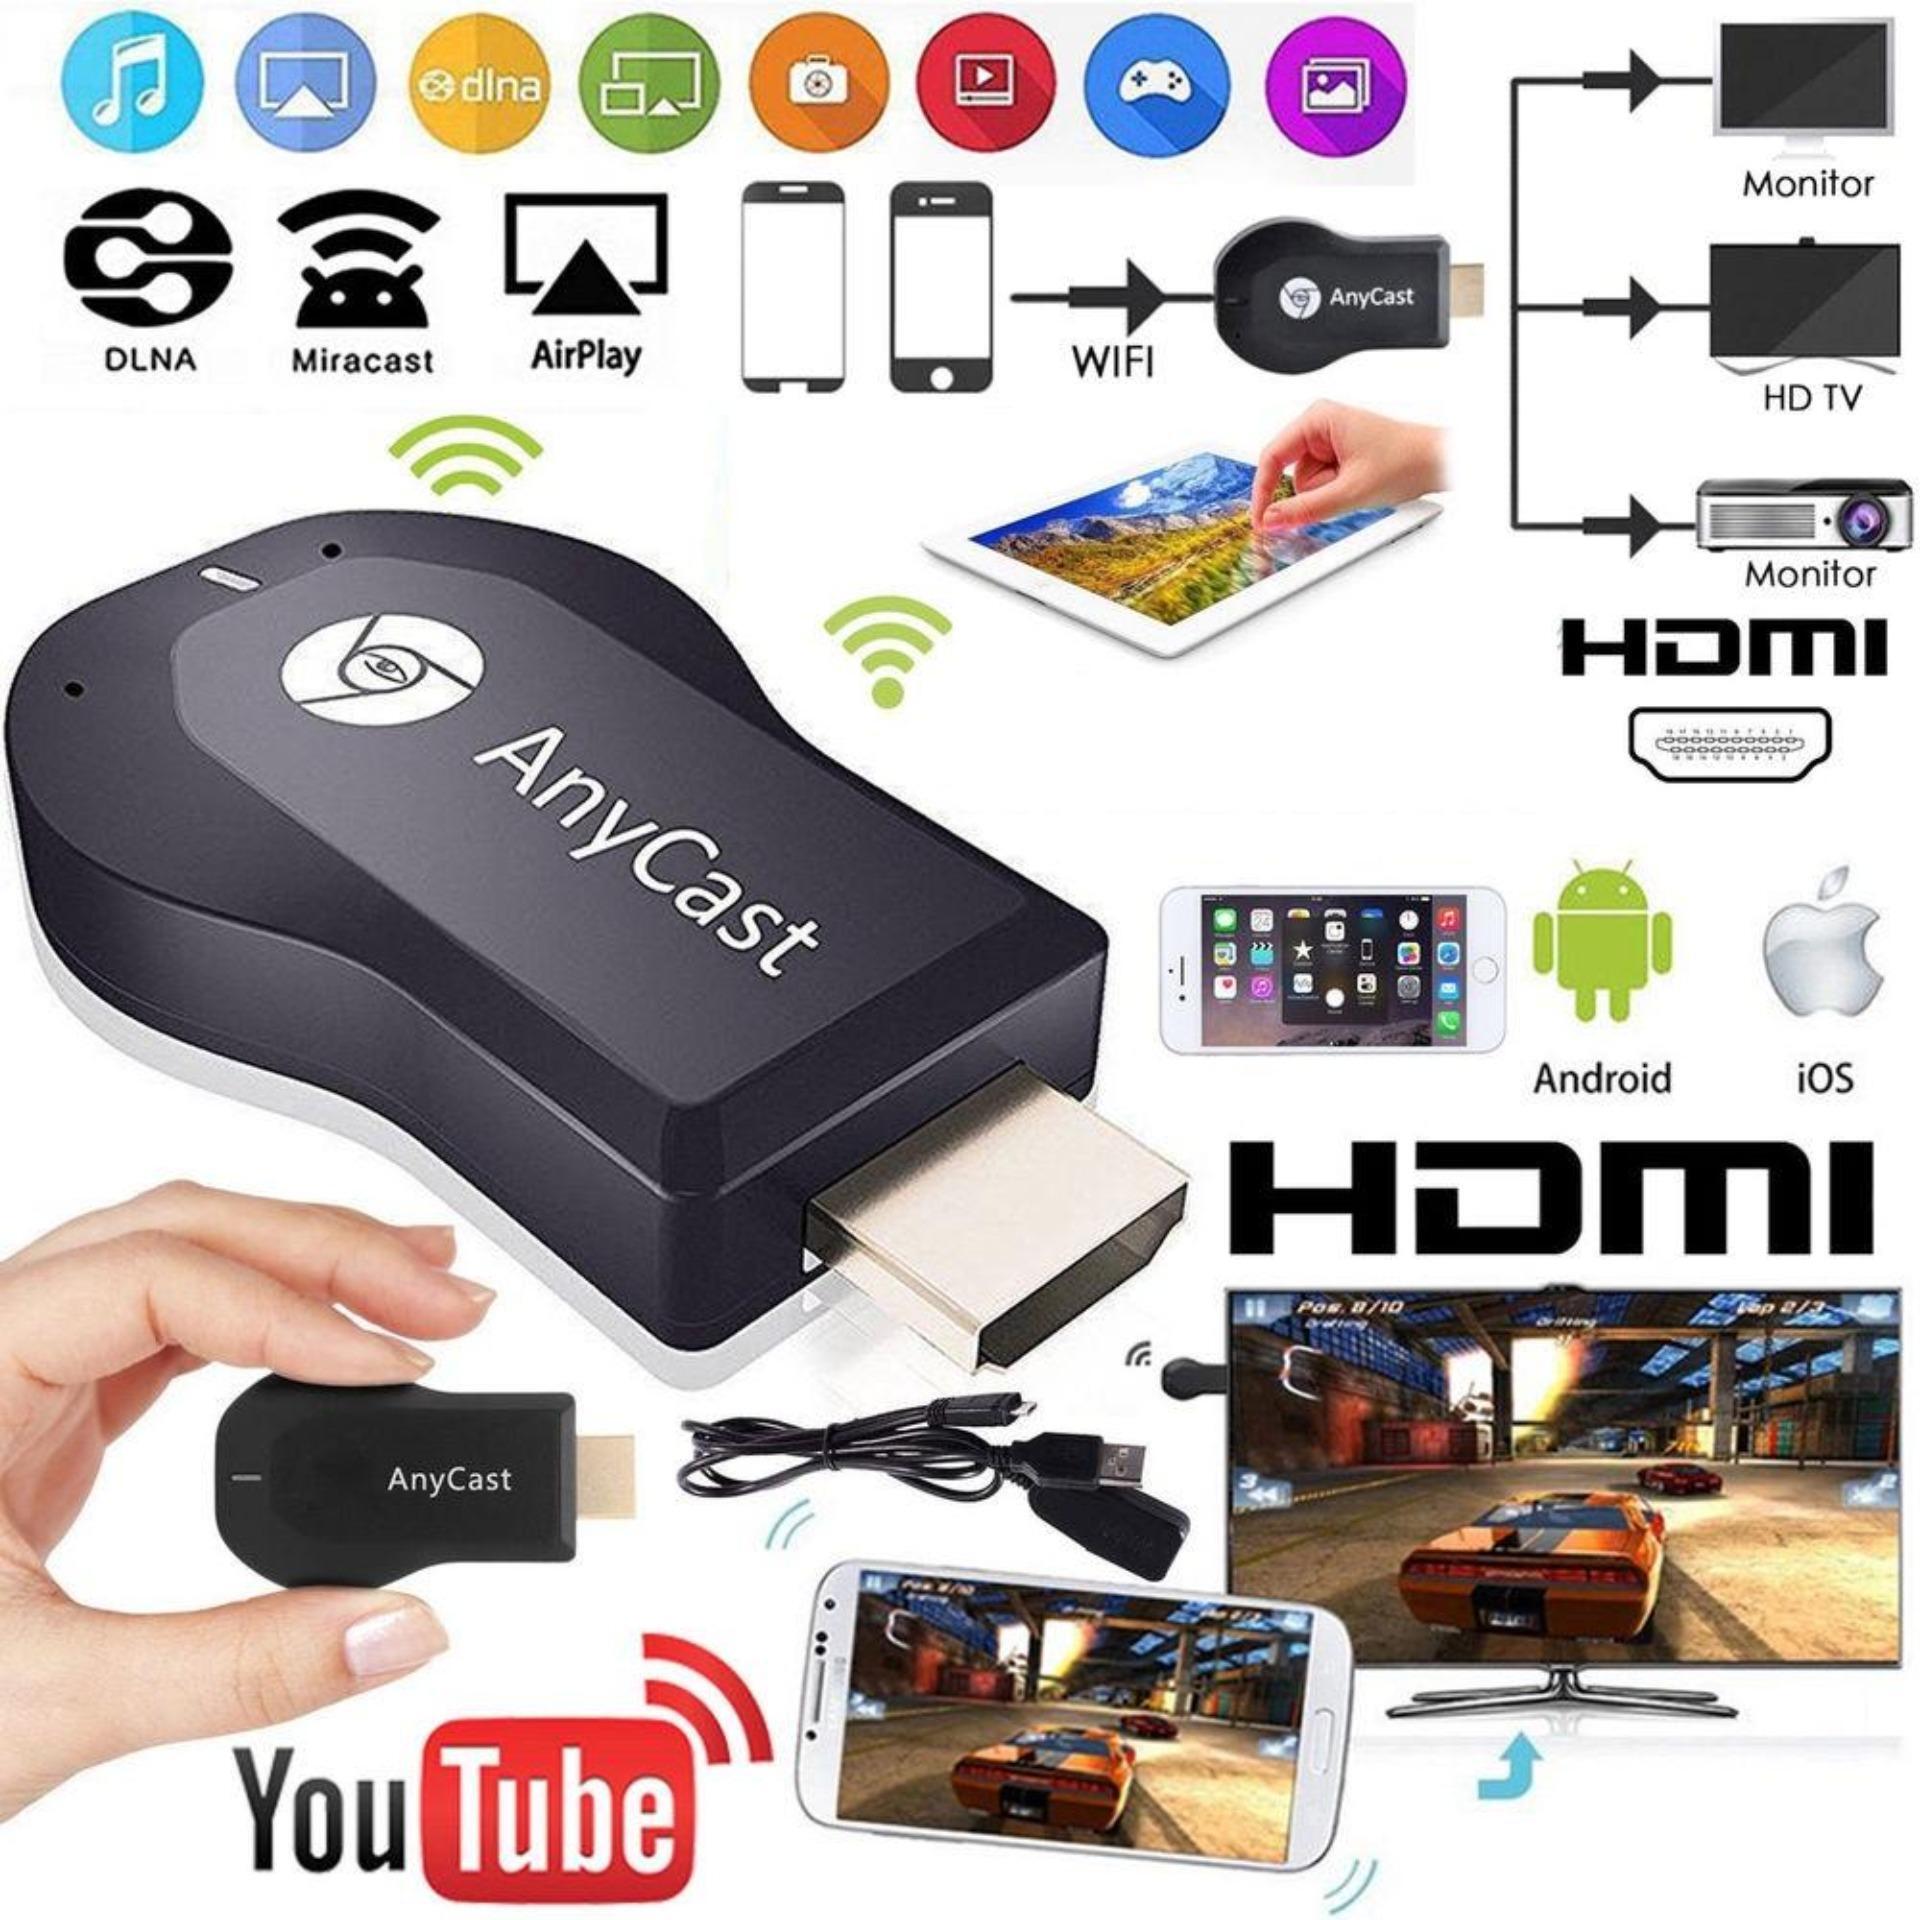 HDMI không dây AnyCast MX, Kết nối HDMI điện thoại với tivi, chơi game mobile trên màn hình tivi, Bảo hành 1 năm 1 đổi 1 Toàn Quốc